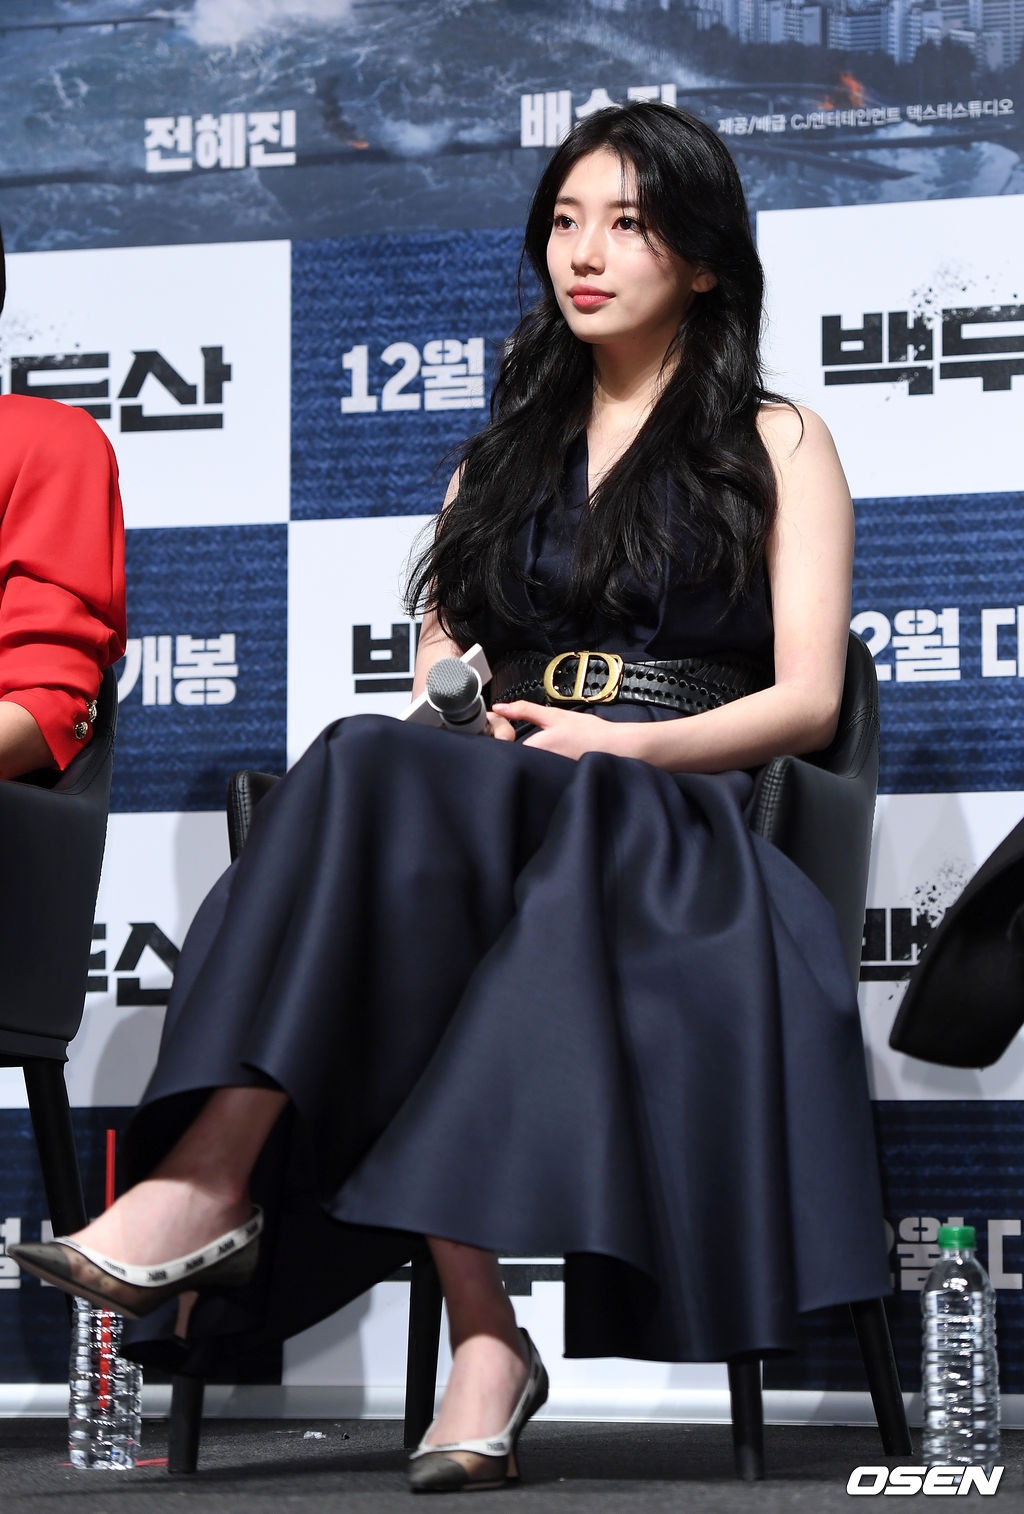 Suzy khoe nhan sắc bên Lee Byung Hun, Ha Jung Woo trong họp báo movie